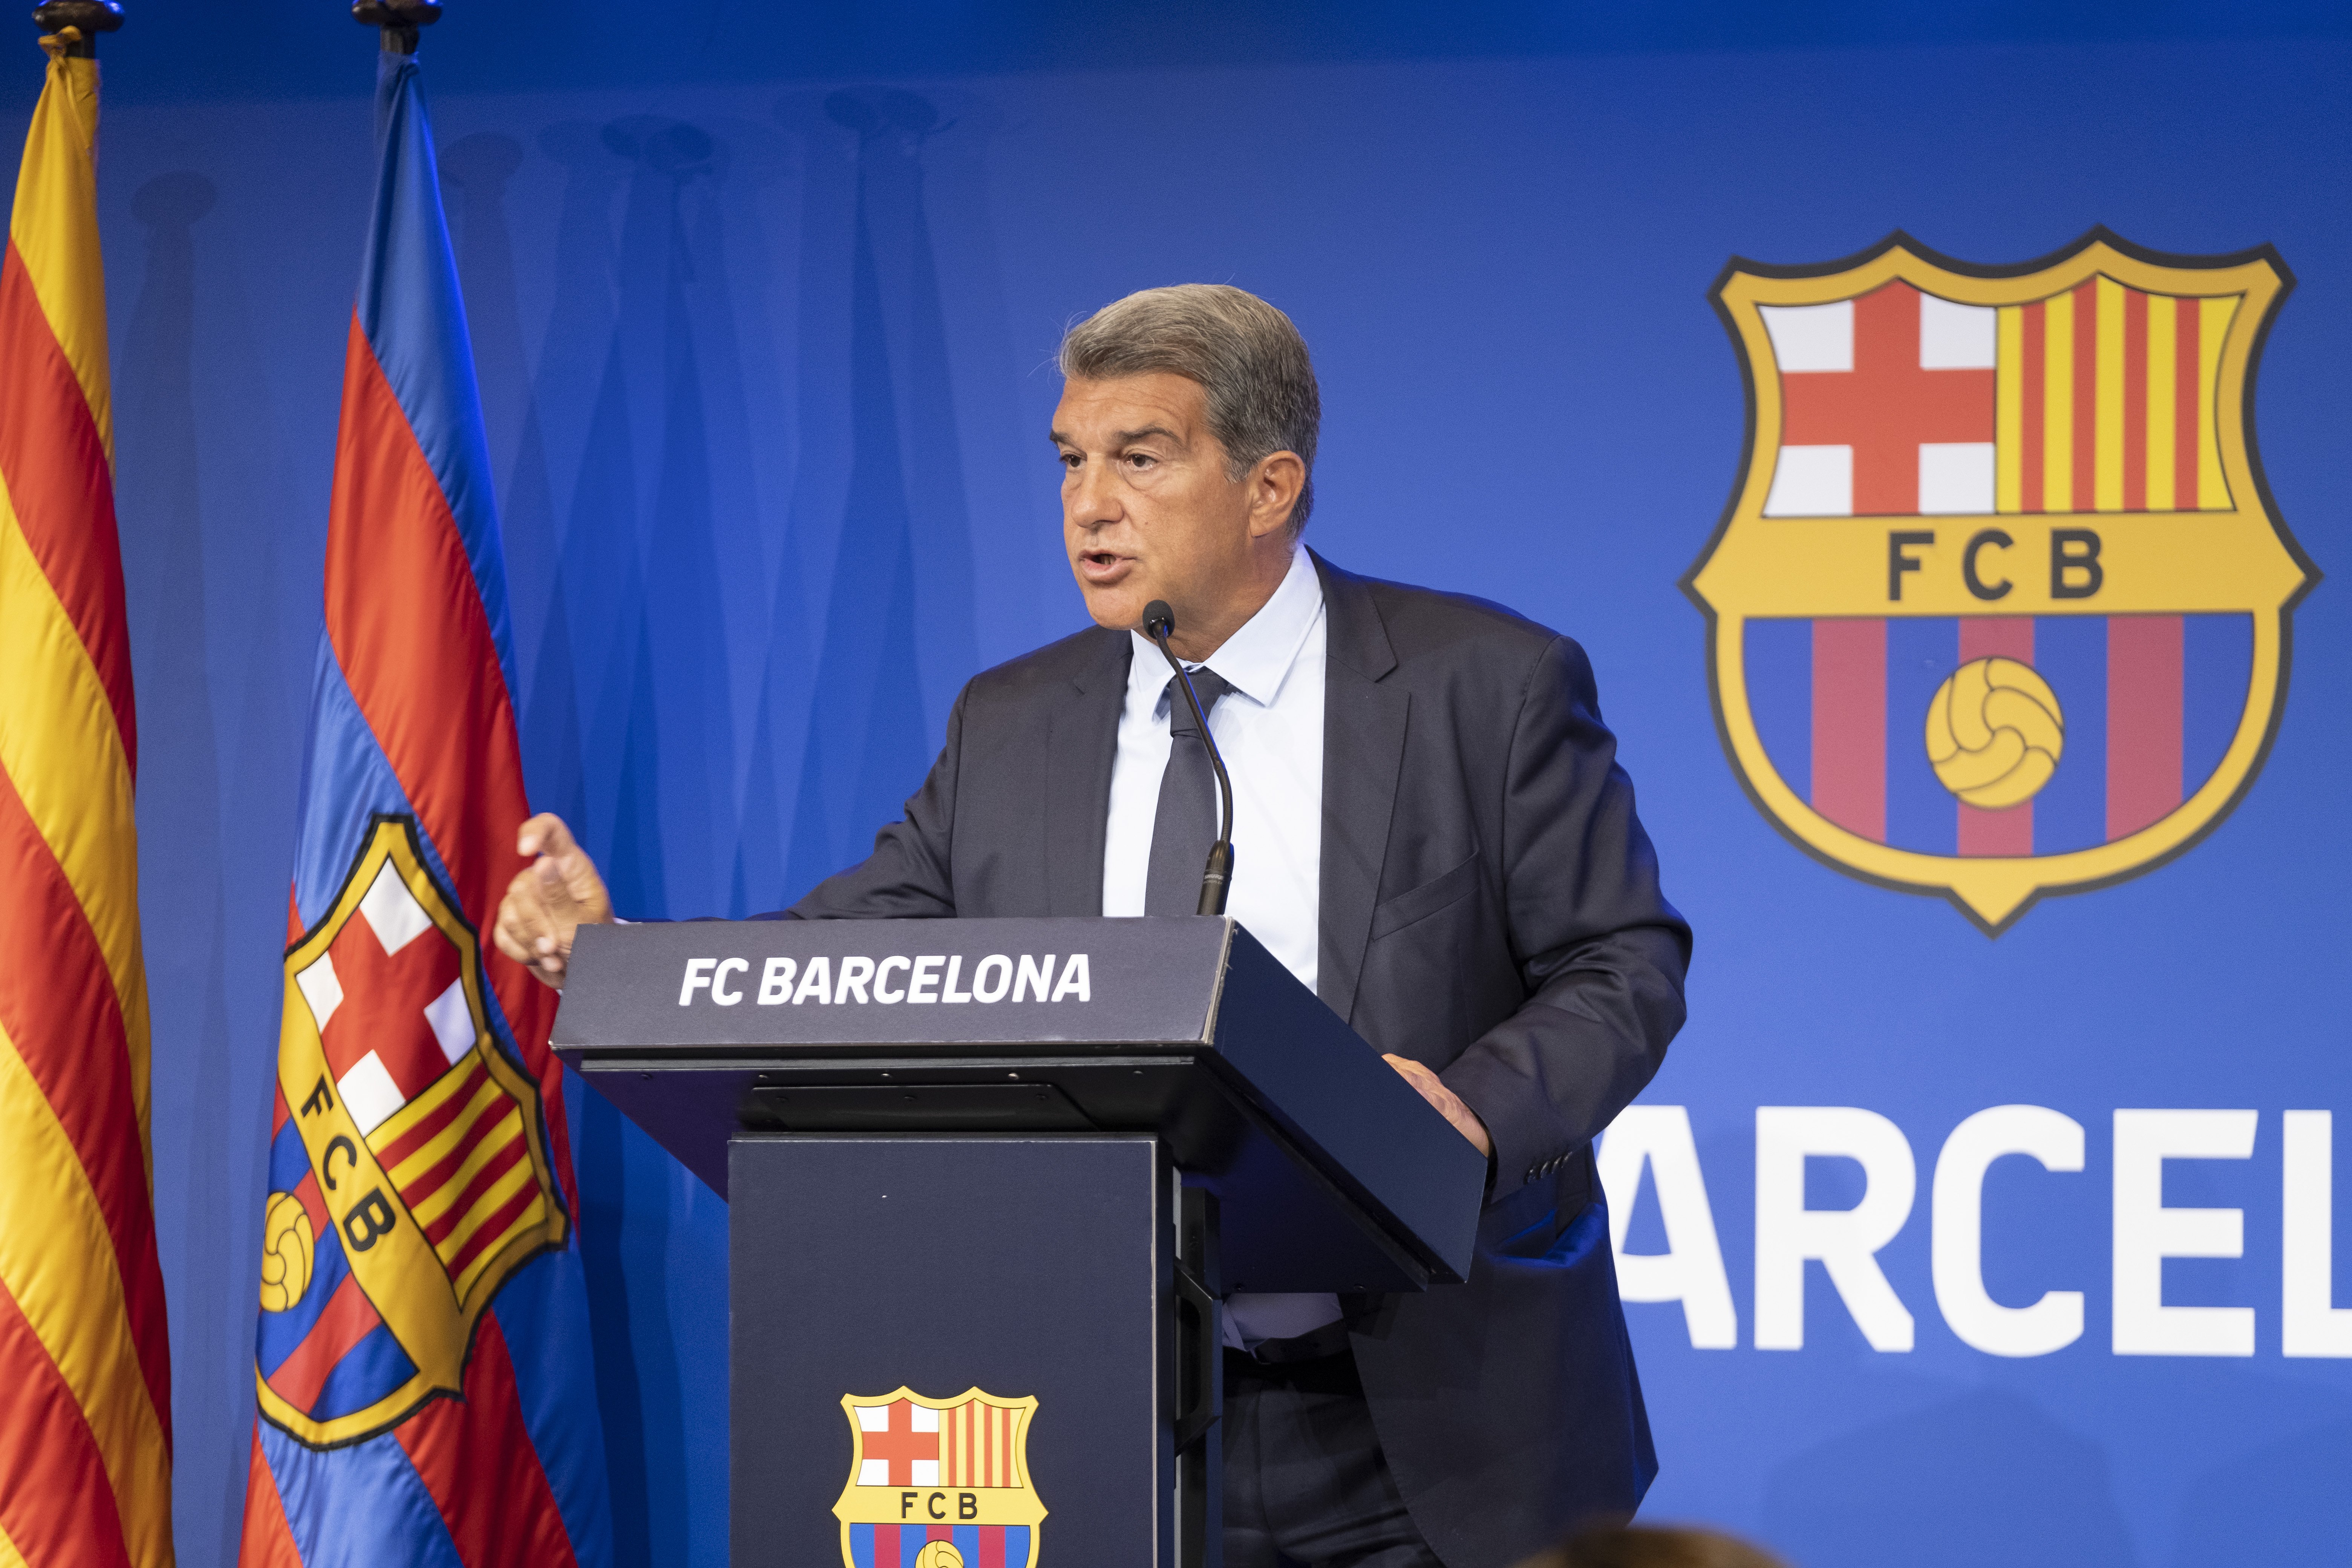 El Barça formalitza un crèdit de 595 milions d'euros